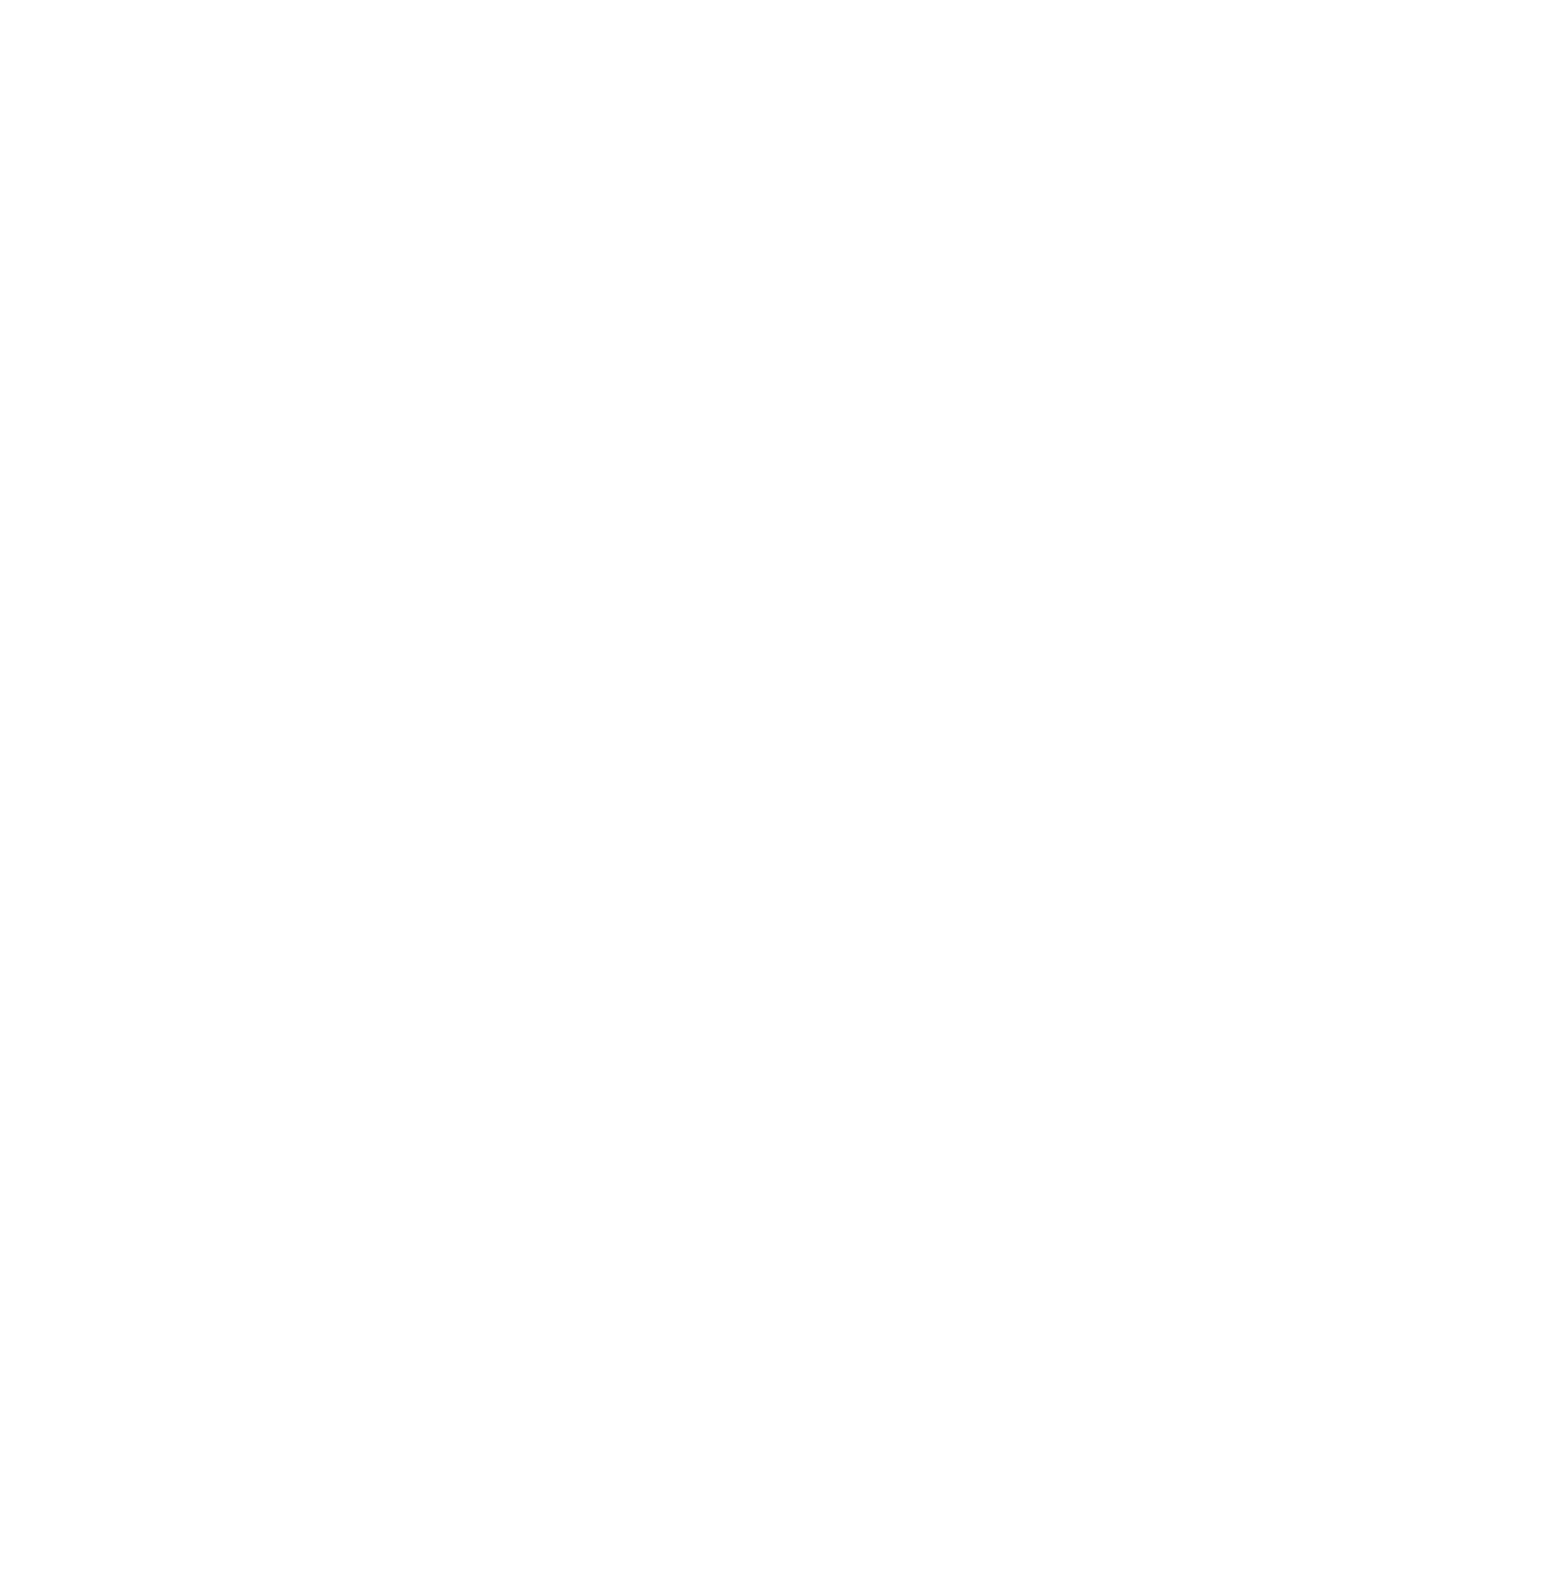 Glencore logo for dark backgrounds (transparent PNG)